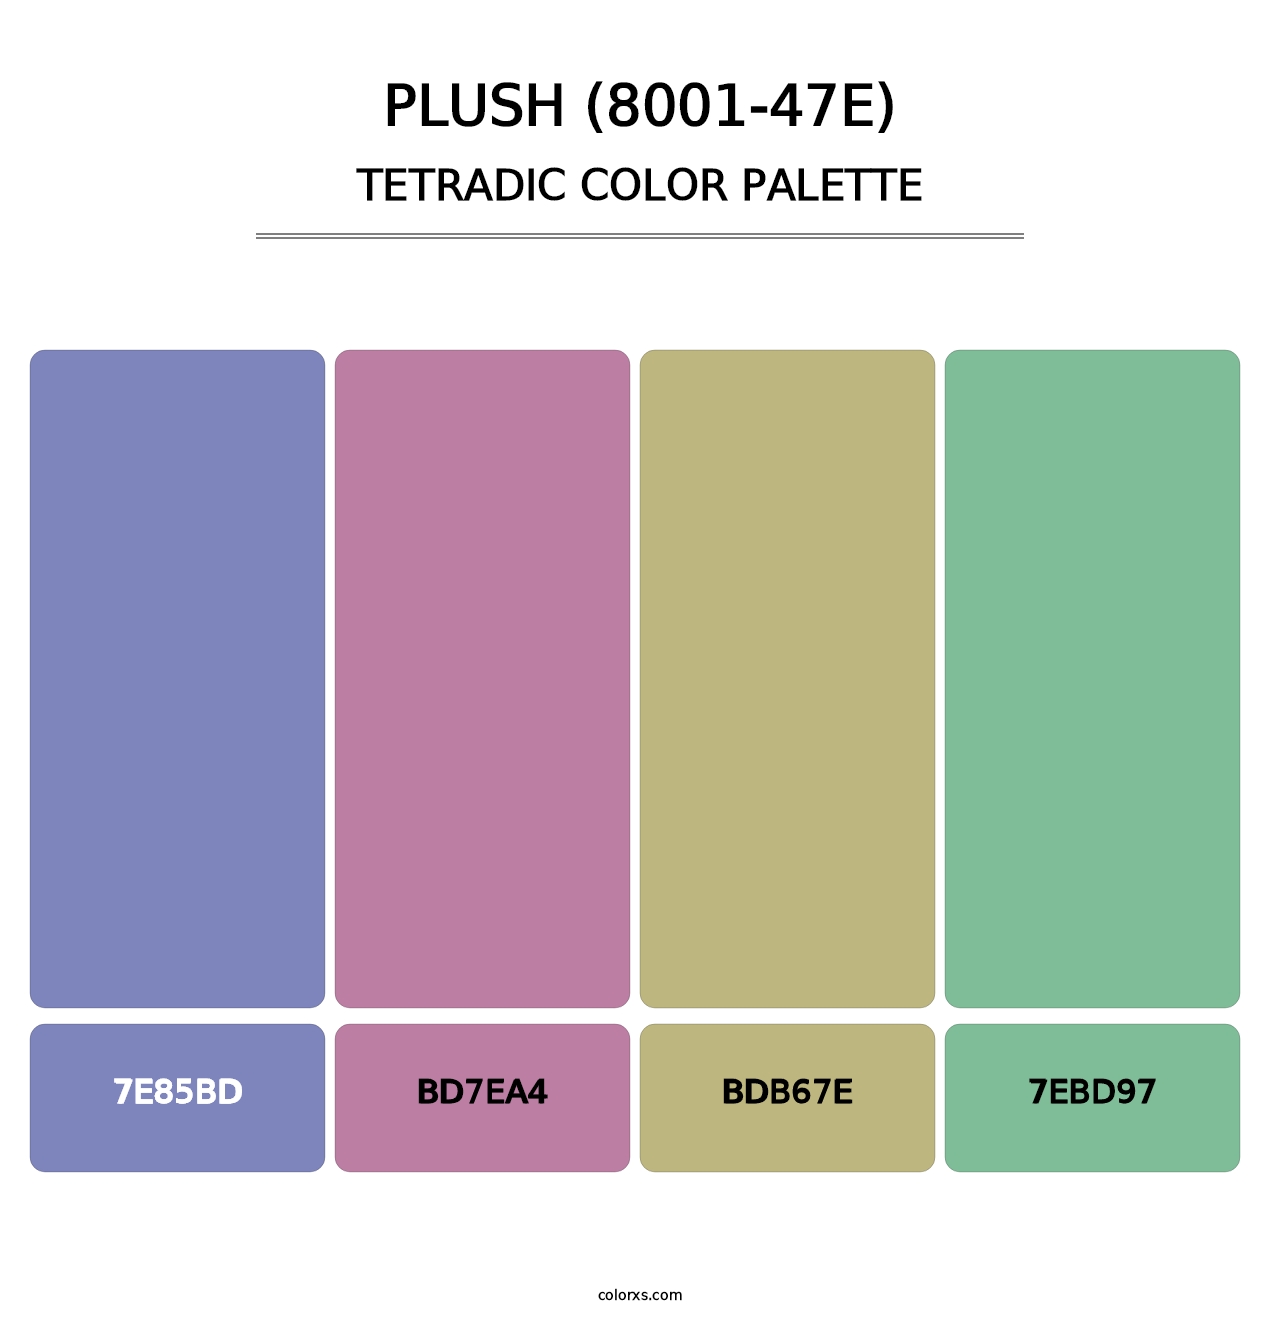 Plush (8001-47E) - Tetradic Color Palette